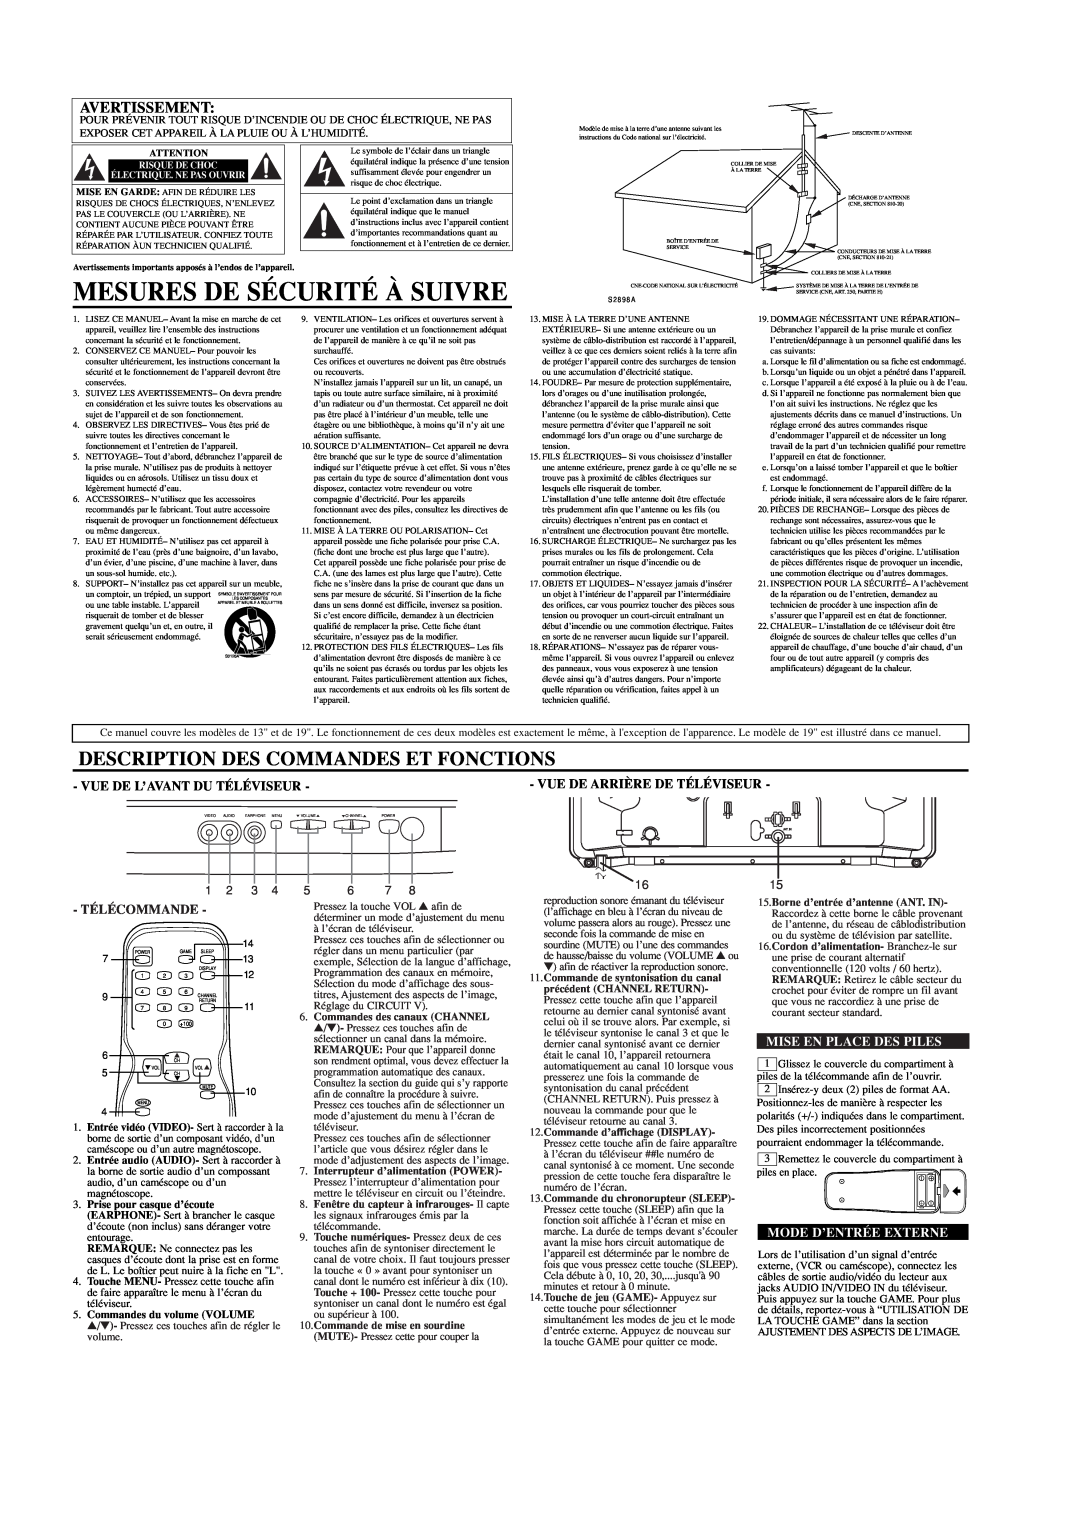 Sylvania DCT1903R Mesures De Sécurité À Suivre, Description Des Commandes Et Fonctions, Avertissement, Télécommande, 1 2 3 